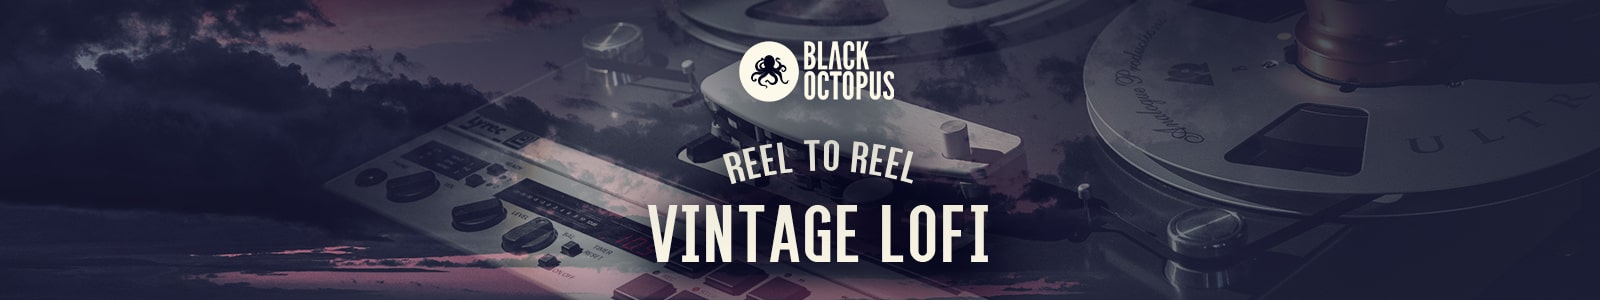 reel to reel by black octopus